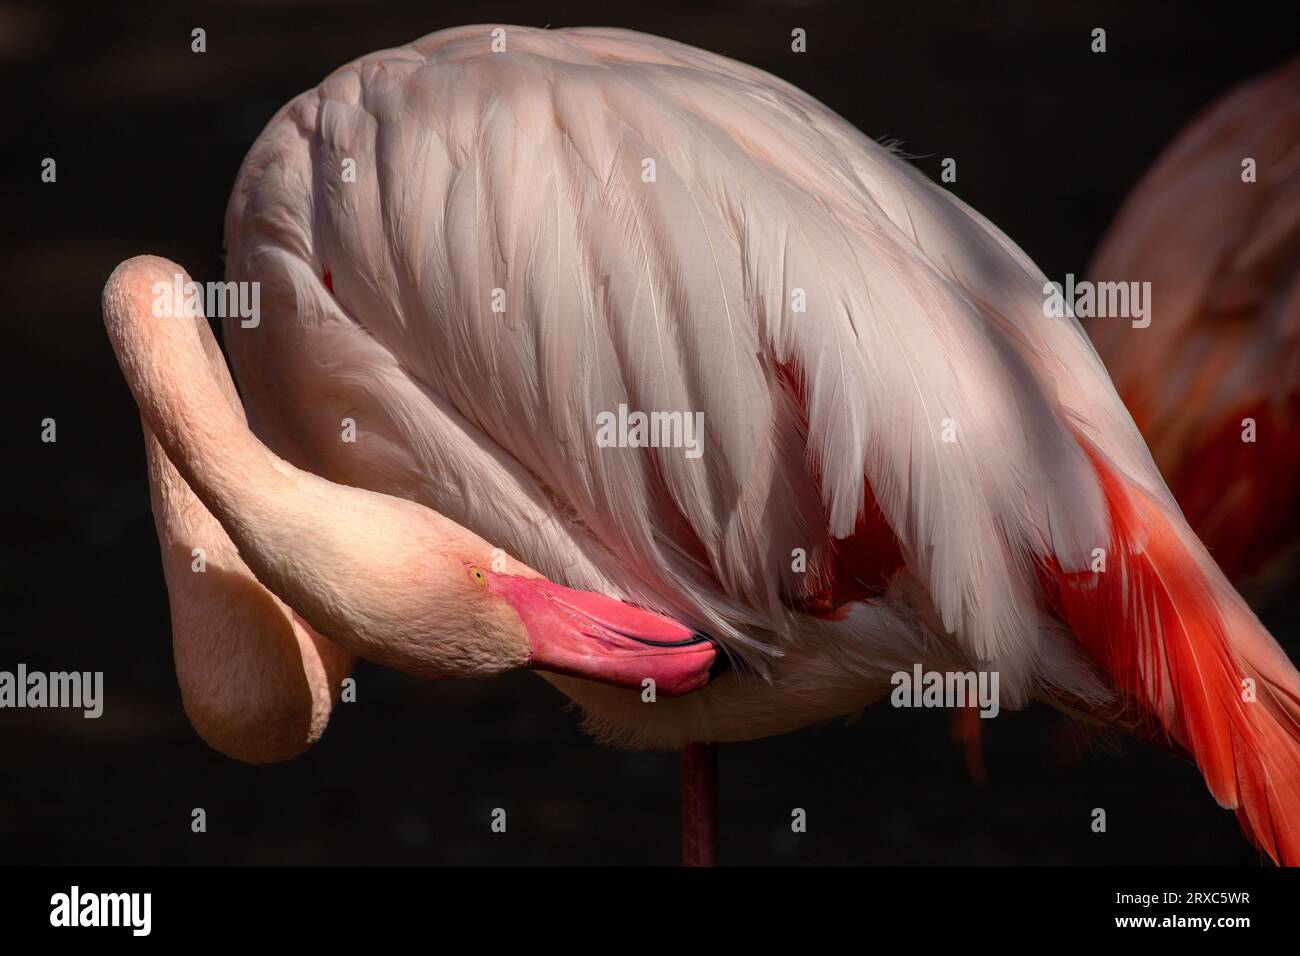 Nahaufnahme des rosafarbenen Flamingo-Wasservogels im Fluss, Hals- und Kopfdetail. Fotografie von lebendiger Natur und Tierwelt. Stockfoto